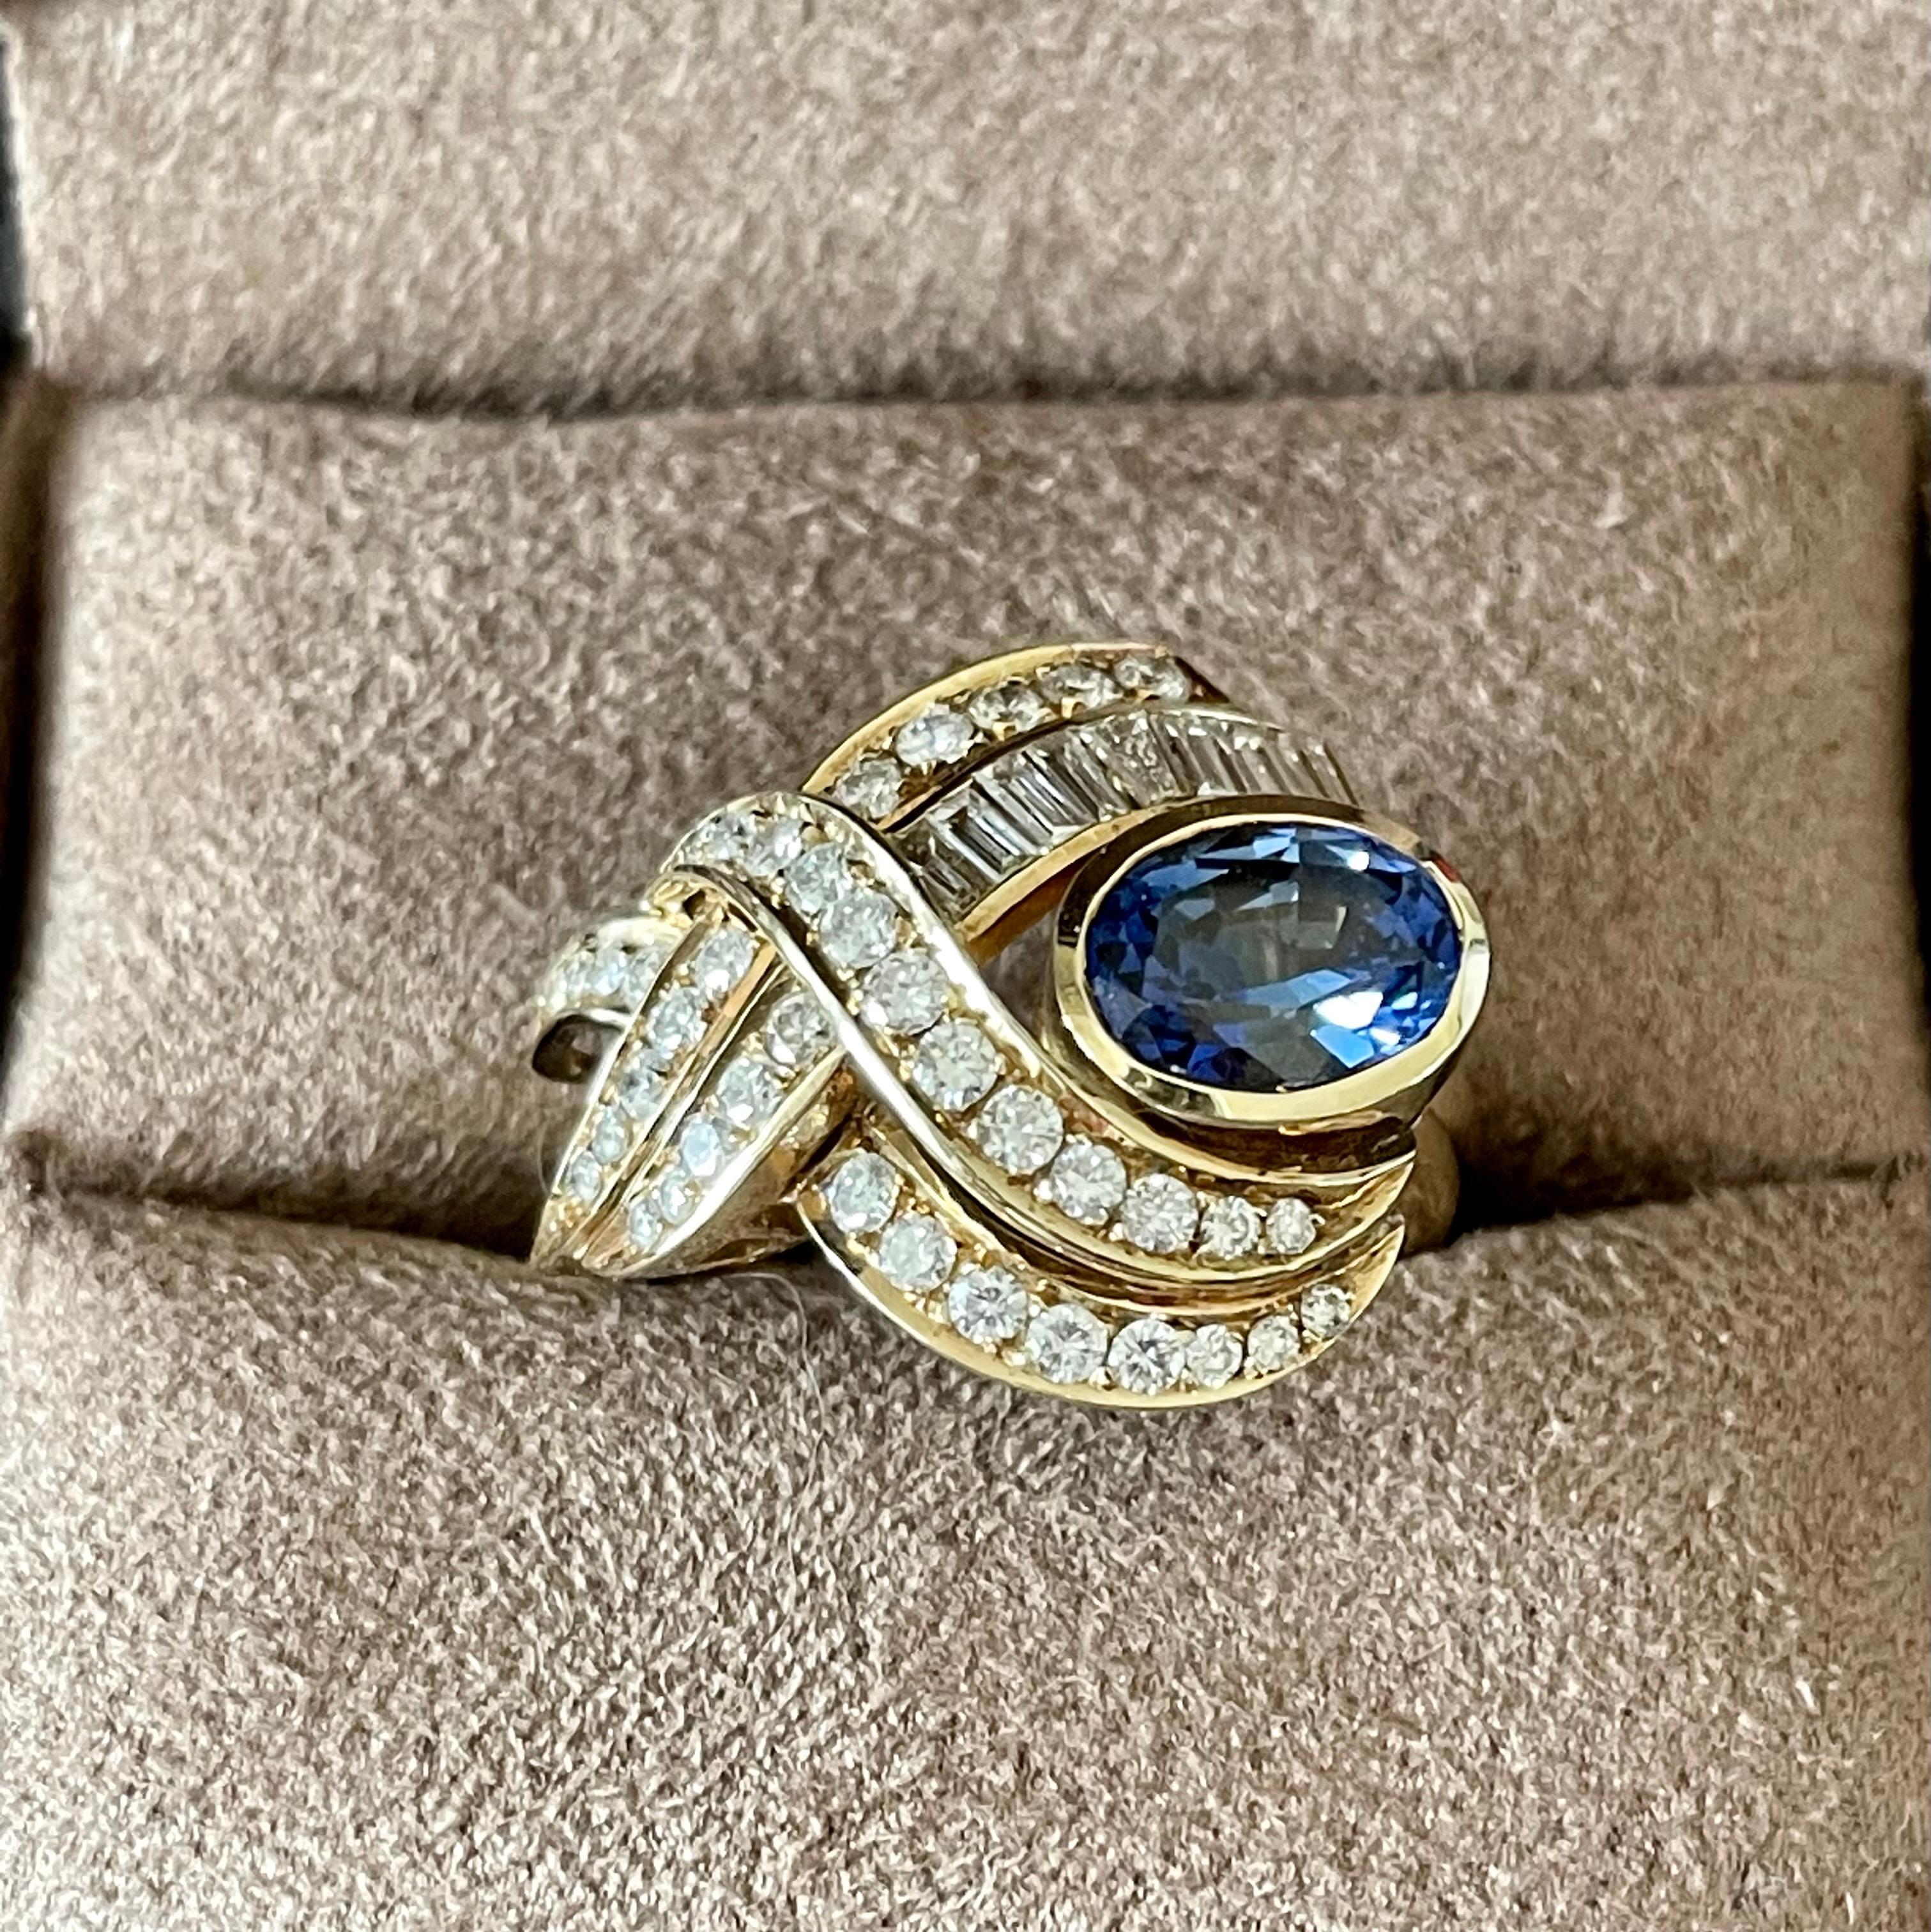 Fesselnder Cockatail-Ring aus 14 K Gelbgold mit einem schönen blauen ovalen Saphir von ca. 1,80 ct, umrahmt von Diamanten im Baguette- und Brillantschliff von ca. 2 ct. 
Der Ring hat derzeit die Größe 54 (US-Größe 7), kann aber leicht in der Größe